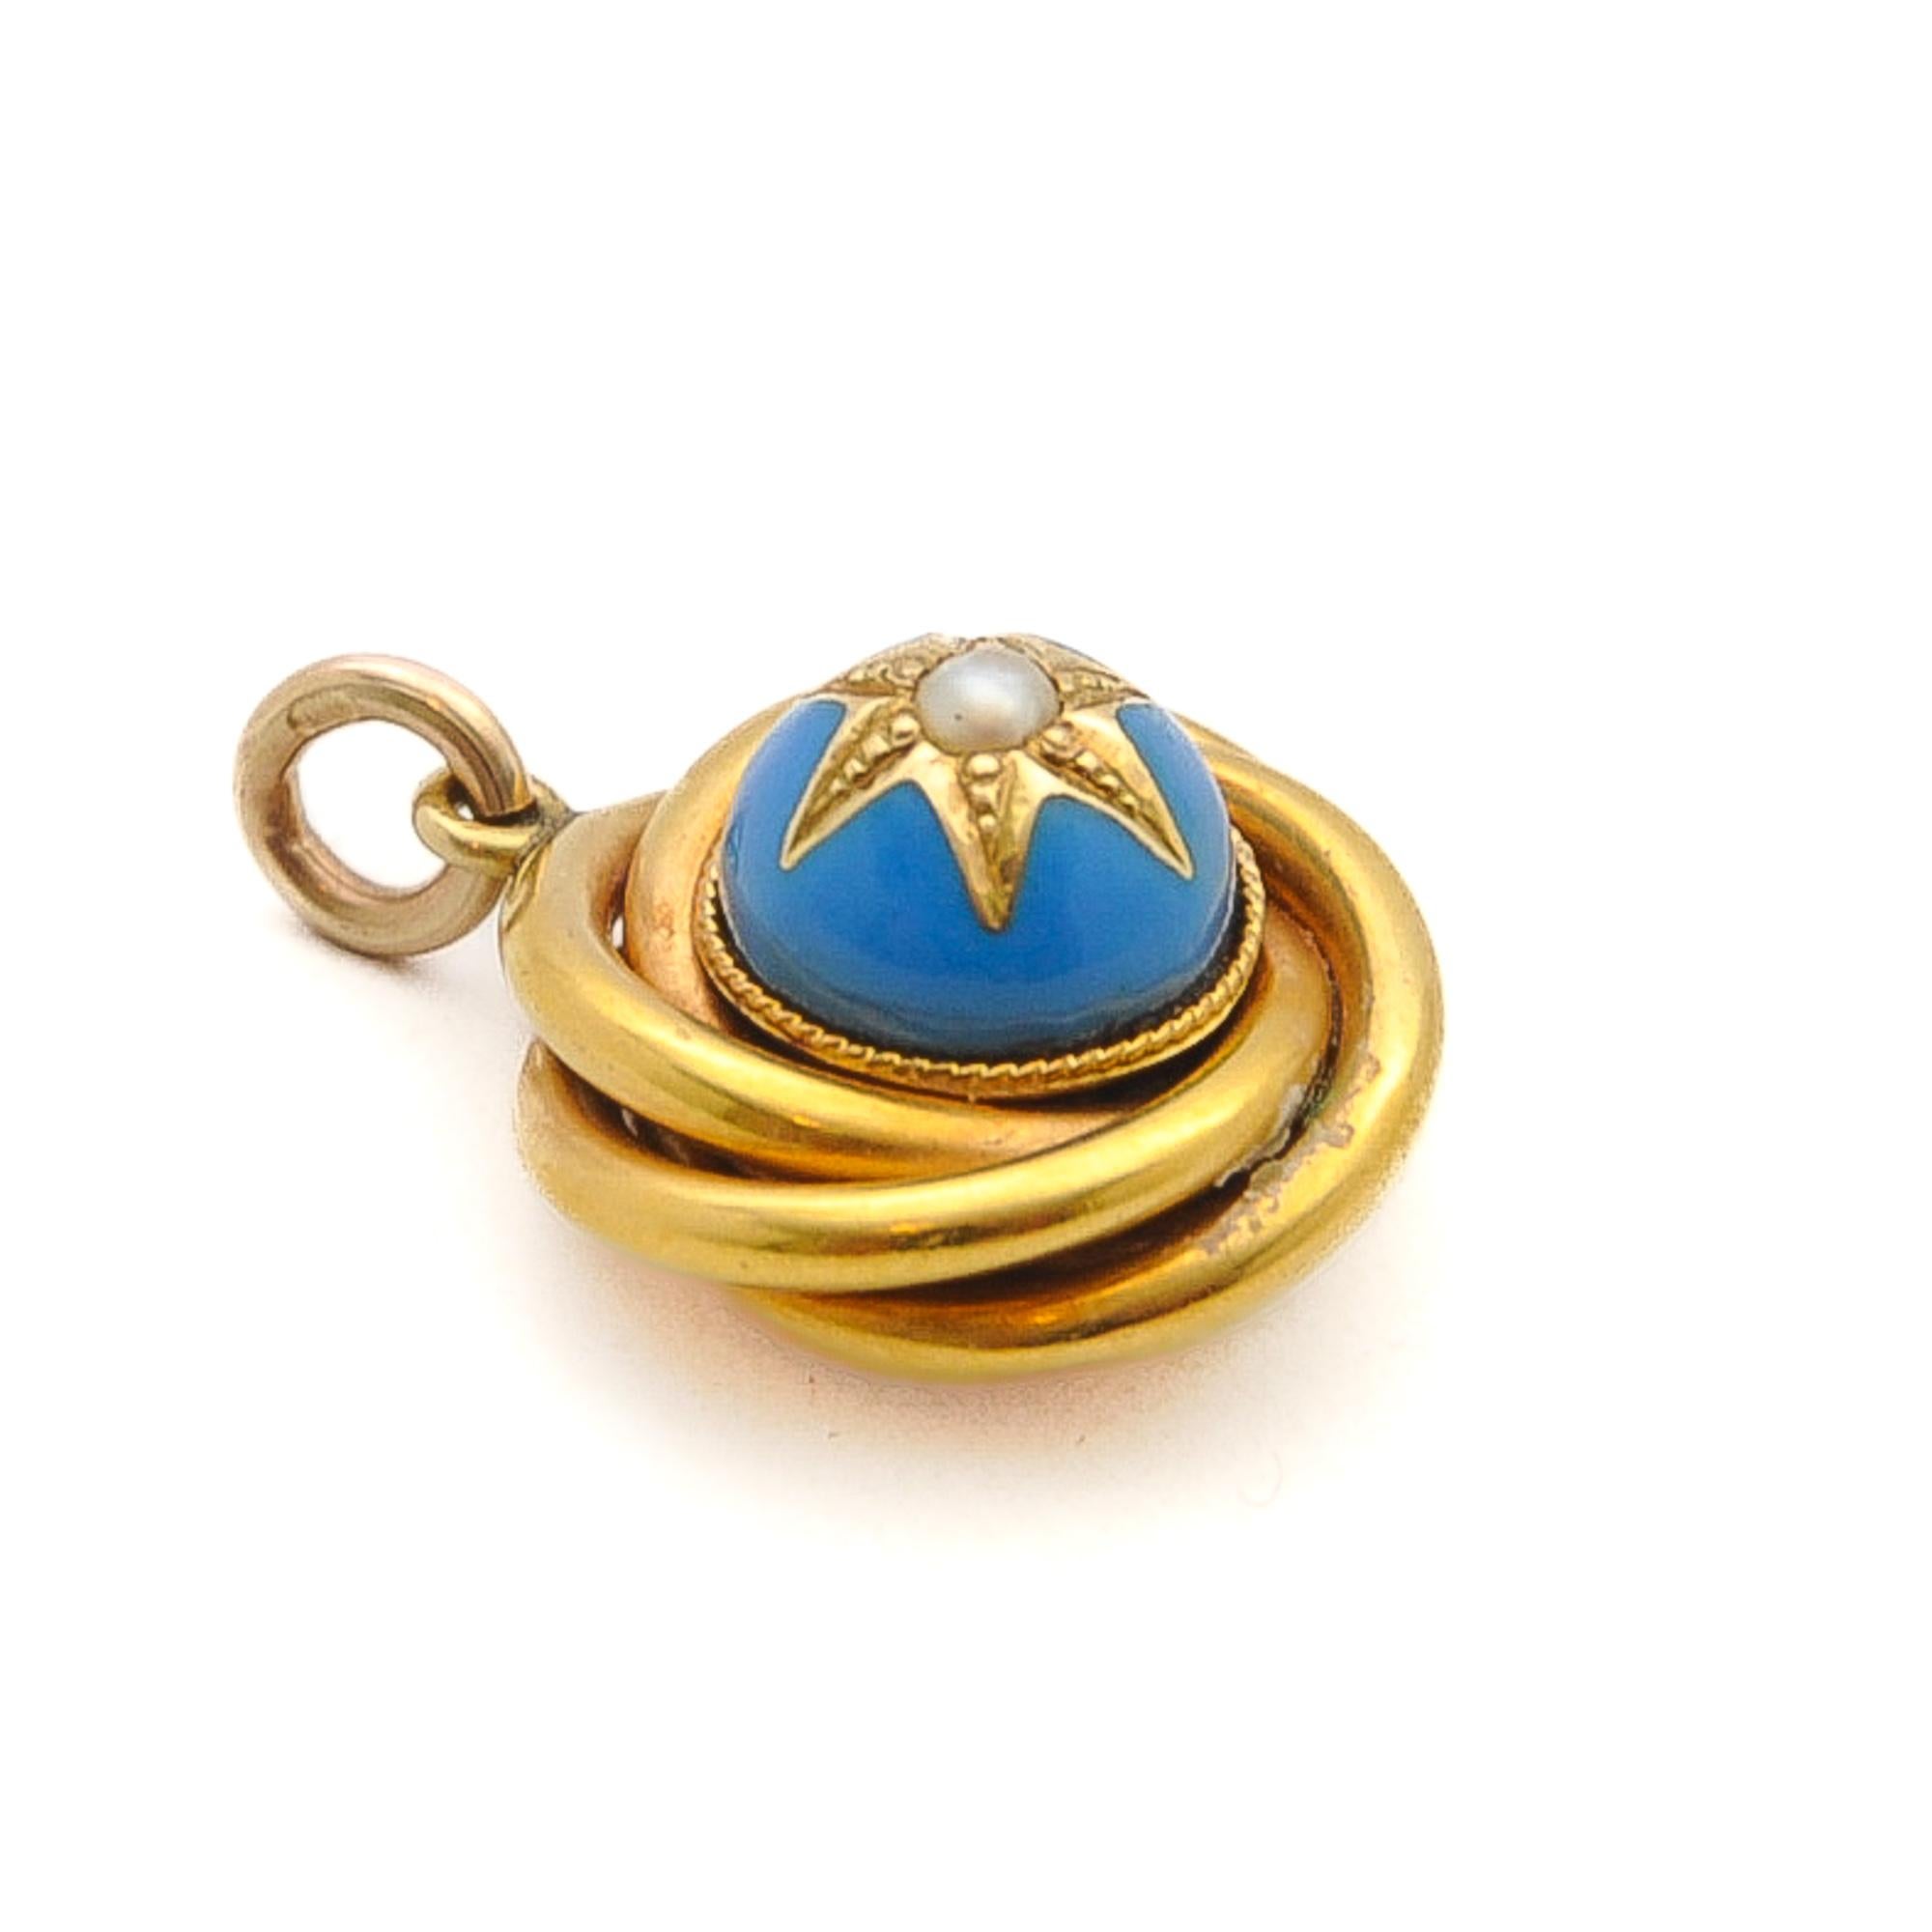 Antique Victorian 15K Gold Blue Enamel Love Knot Pendant For Sale 2